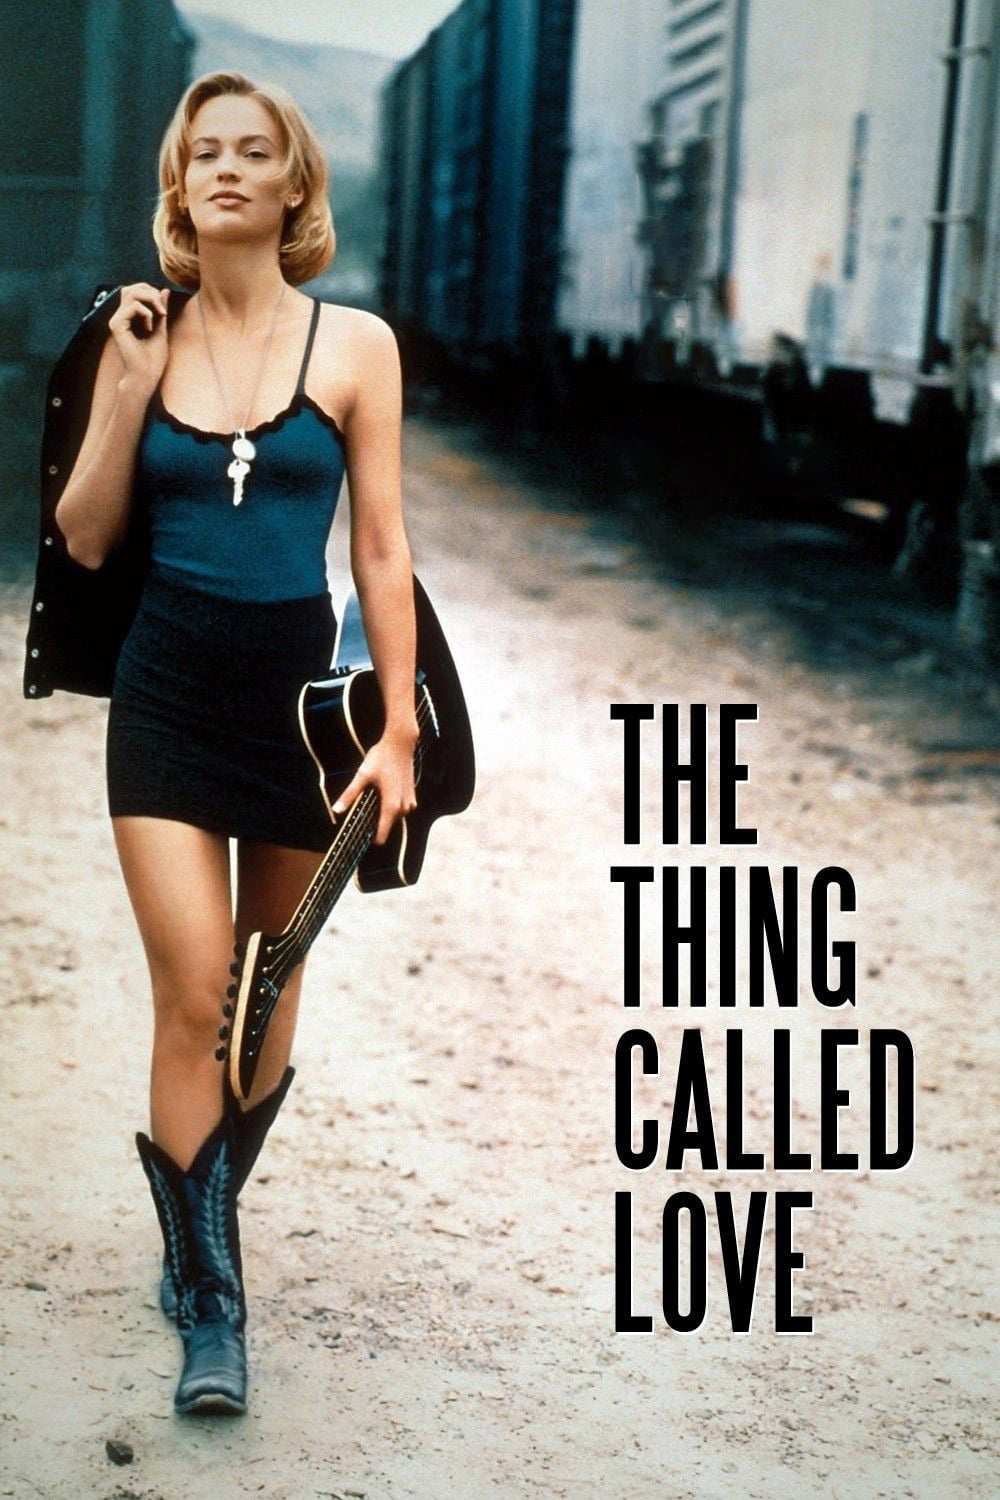 Plakat von "The Thing called Love - Die Entscheidung fürs Leben"